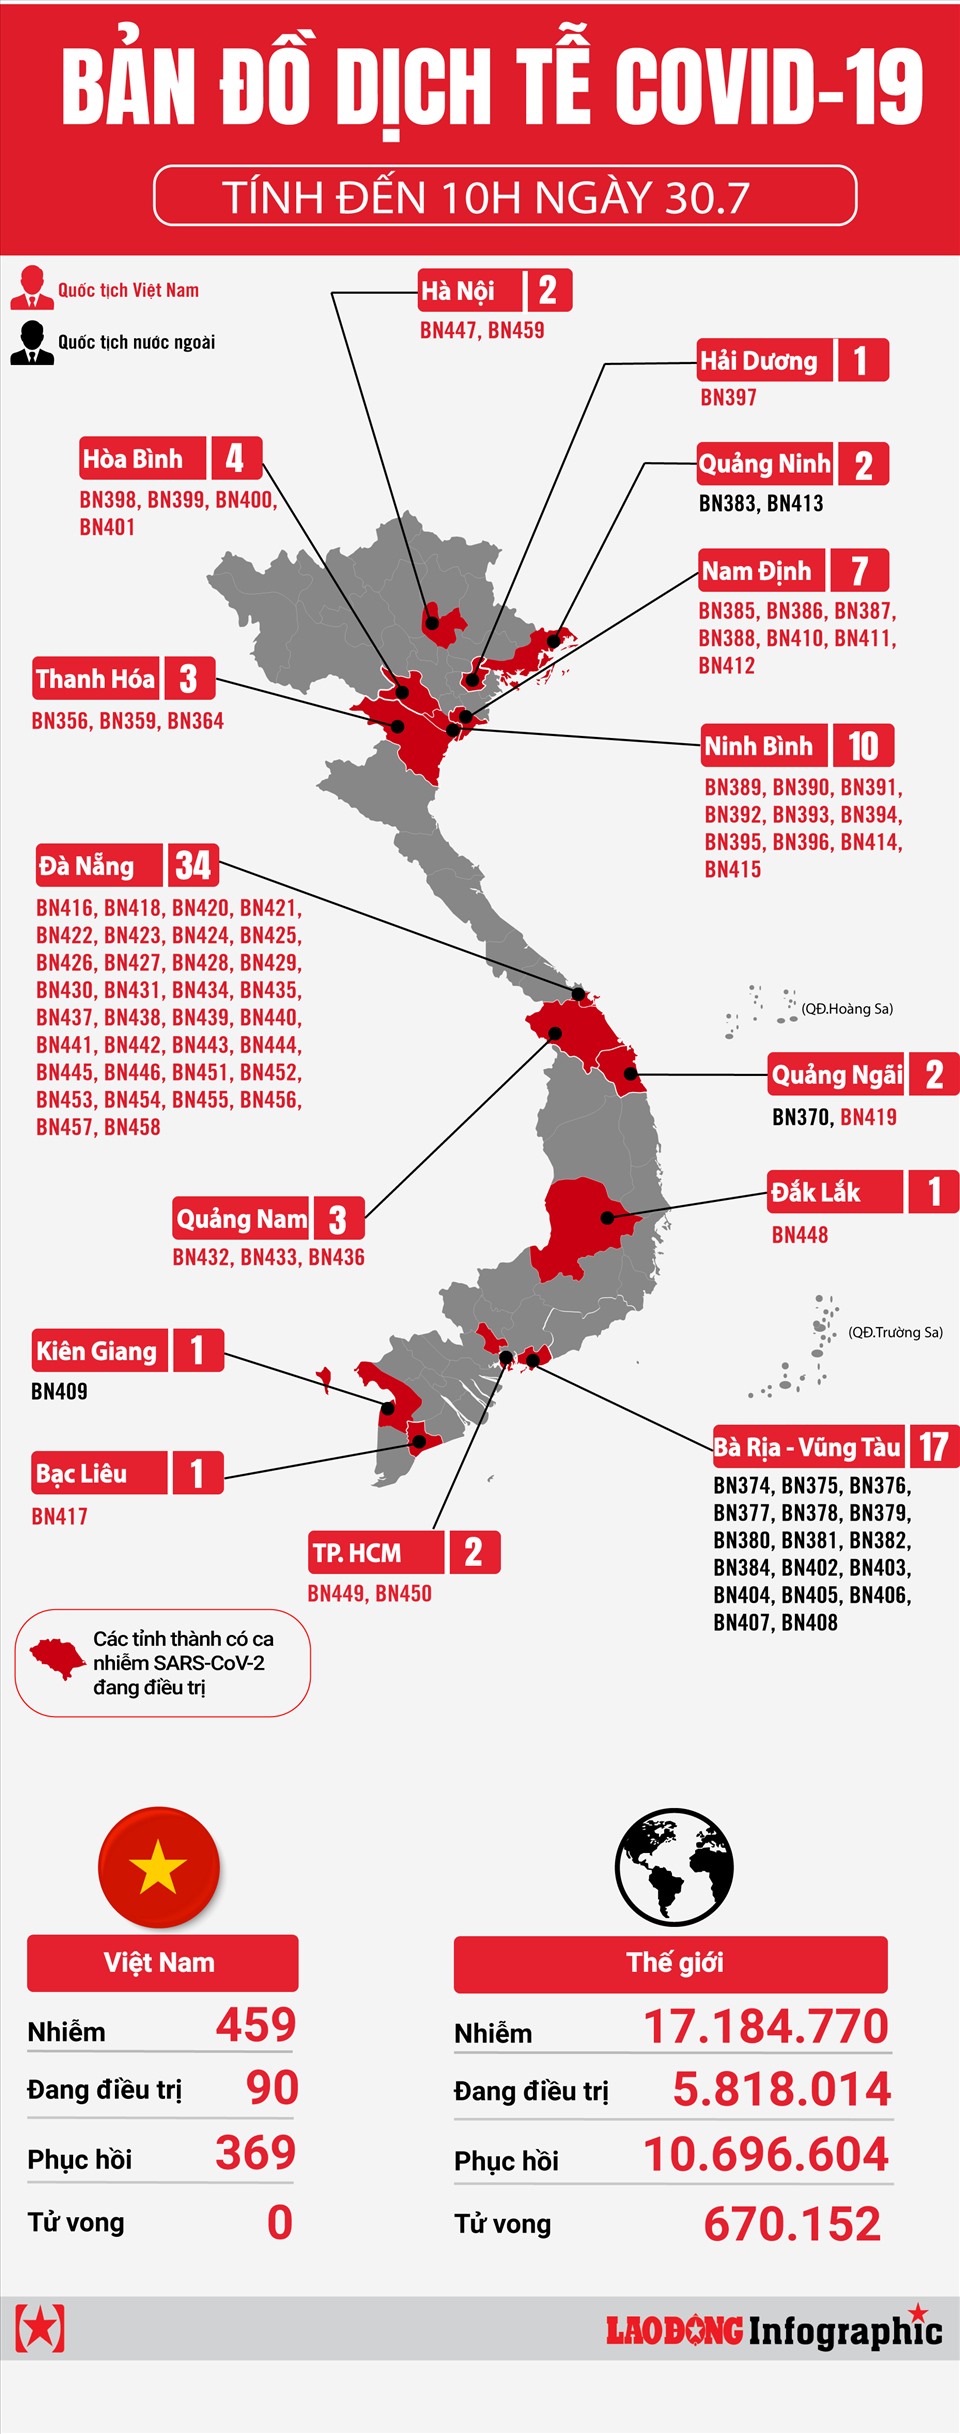 Bản đồ dịch tễ COVID-19 tại Việt Nam tính đến 12h ngày 30.7 - dữ liệu thống kê: Cập nhật bản đồ dịch tễ COVID-19 tại Việt Nam tính đến 12h ngày 30.7 với dữ liệu thống kê chính xác nhất và chi tiết nhất. Tình hình dịch bệnh đang được kiểm soát tốt, cùng nhau đẩy lùi dịch bệnh và bảo vệ sức khỏe cộng đồng.